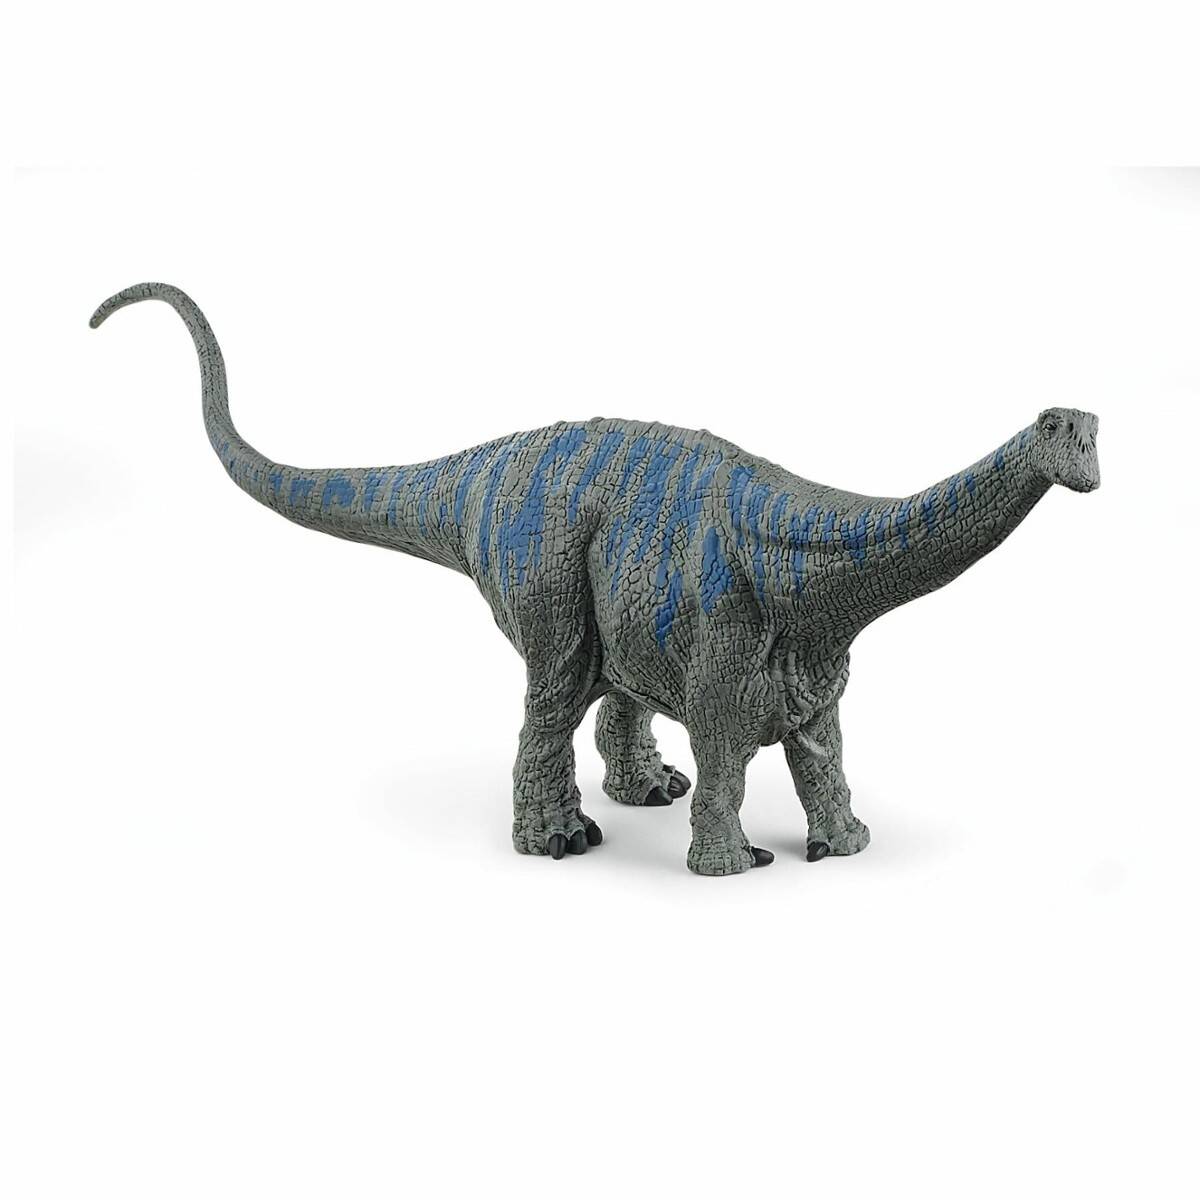 SCHLEICH figurka Brontosaurus 15027